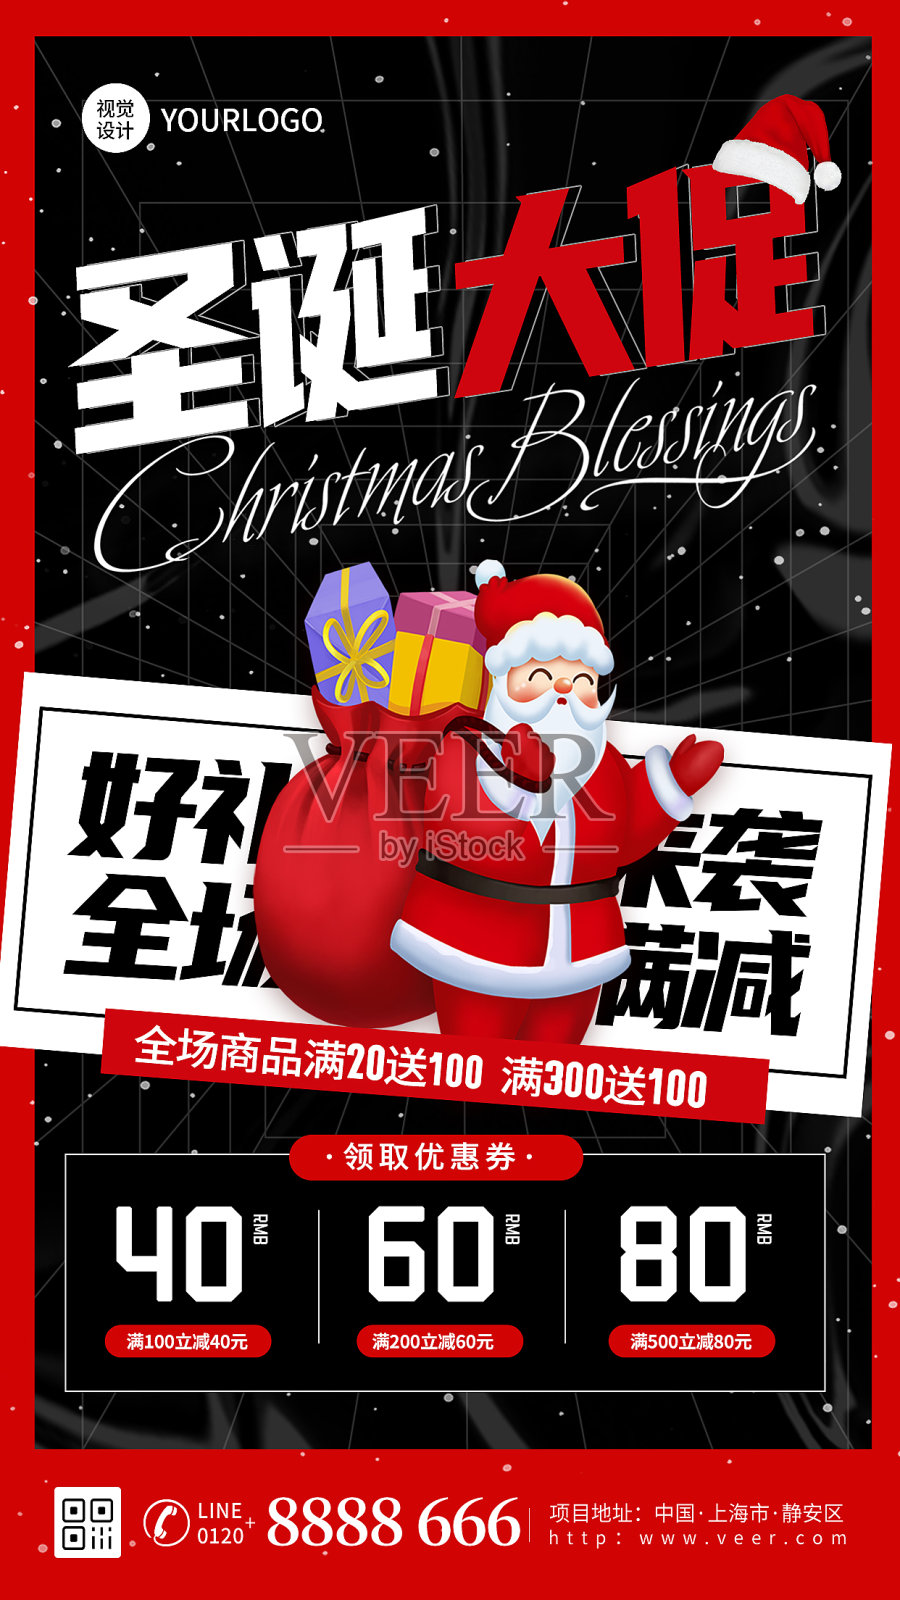 圣诞节促销活动简约大气手机海报设计模板素材